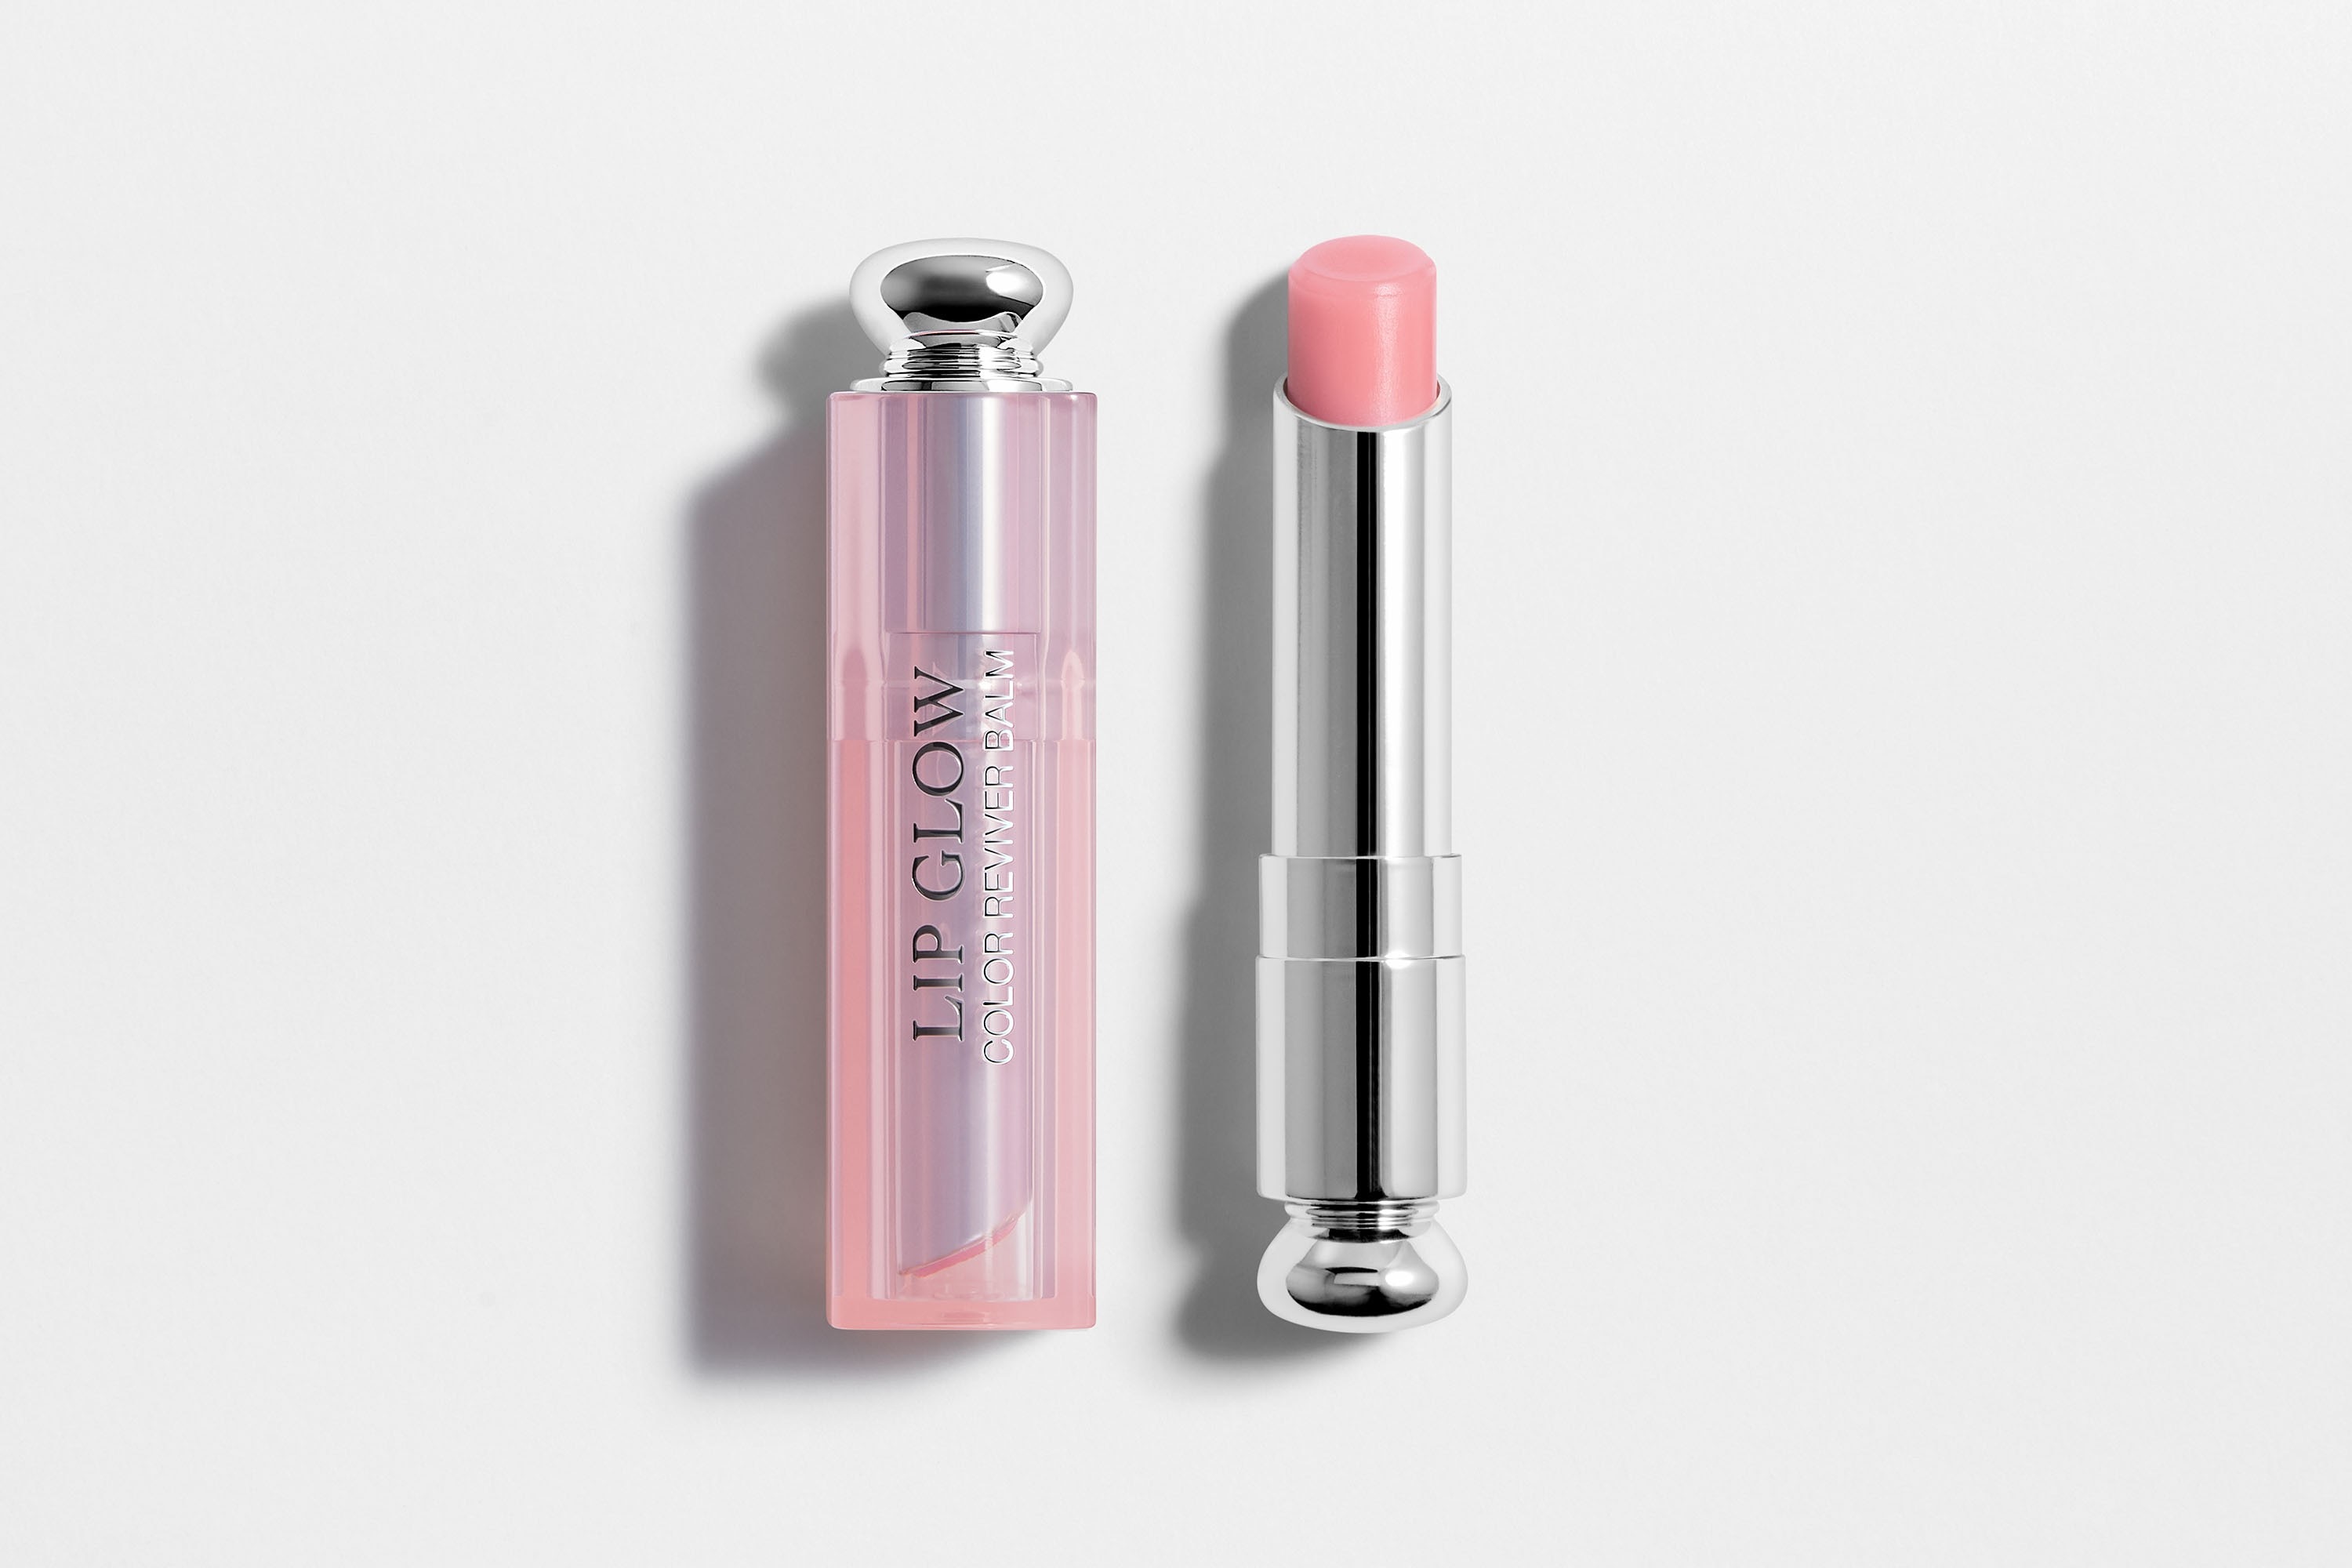   Đôi môi căng mọng và quyến rũ nhờ son dưỡng Dior Addict Lip Glow.   